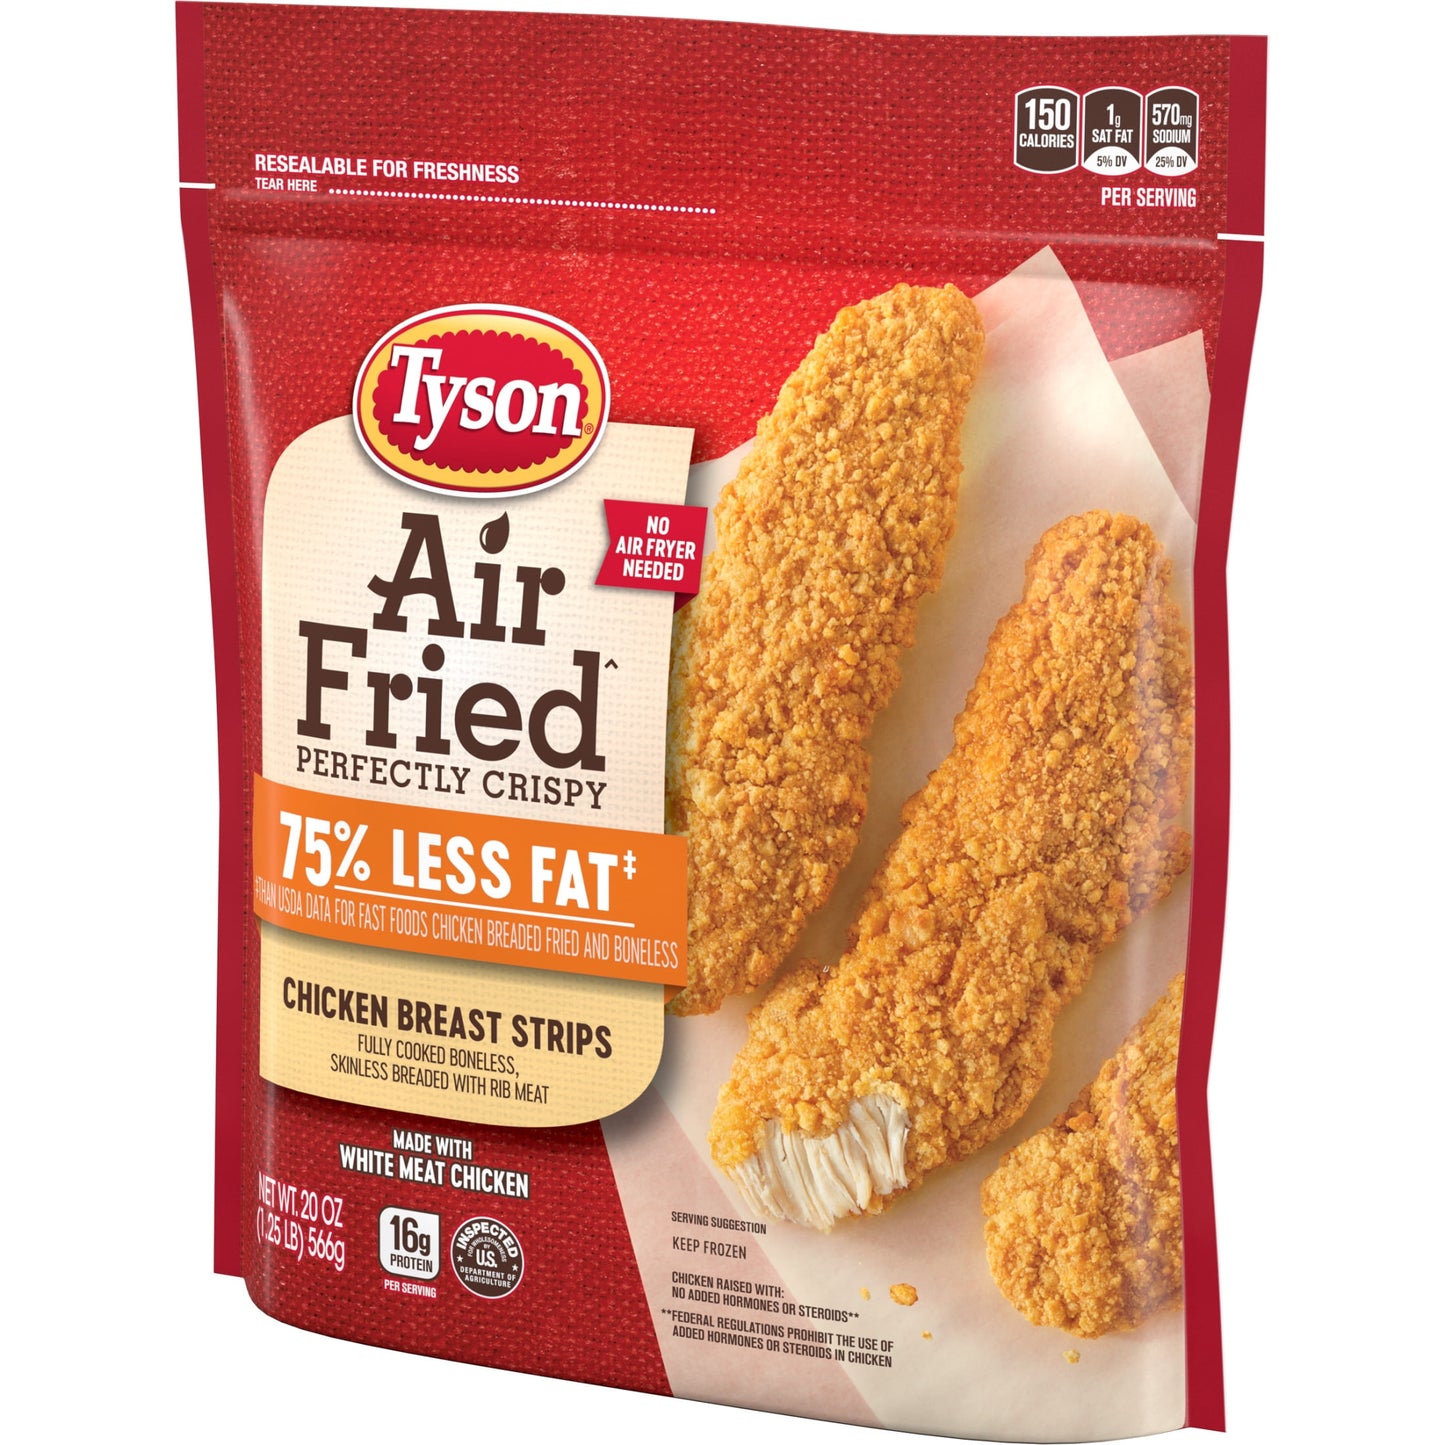 Tyson Air Fried Crispy Chicken Breast Strips, 1.25 lb (Frozen)